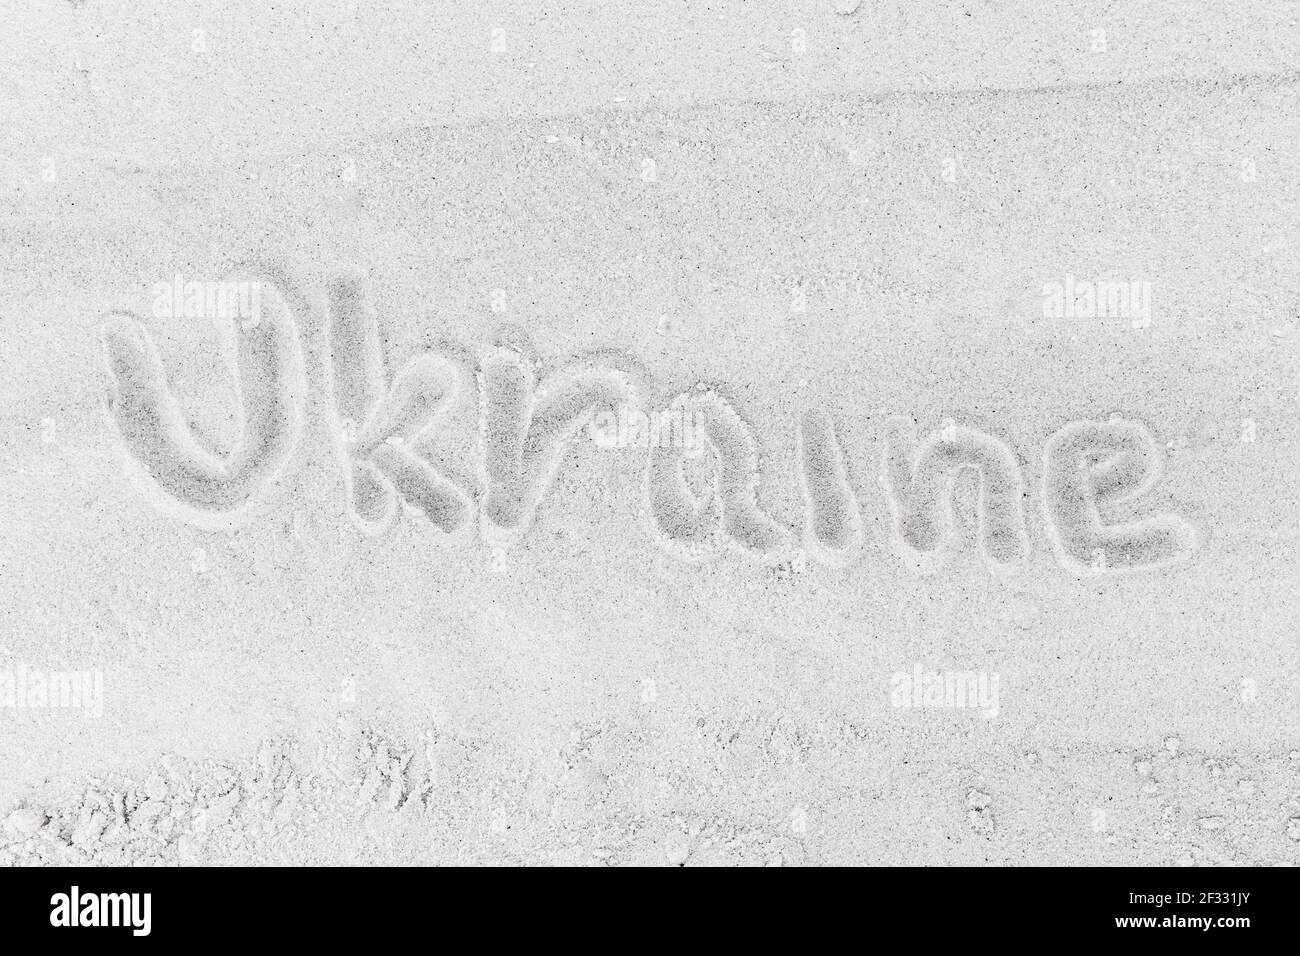 Das Wort ukrainische Zeichen oder Symbol auf weißen Strand Sand in der Nähe geschrieben. Stockfoto